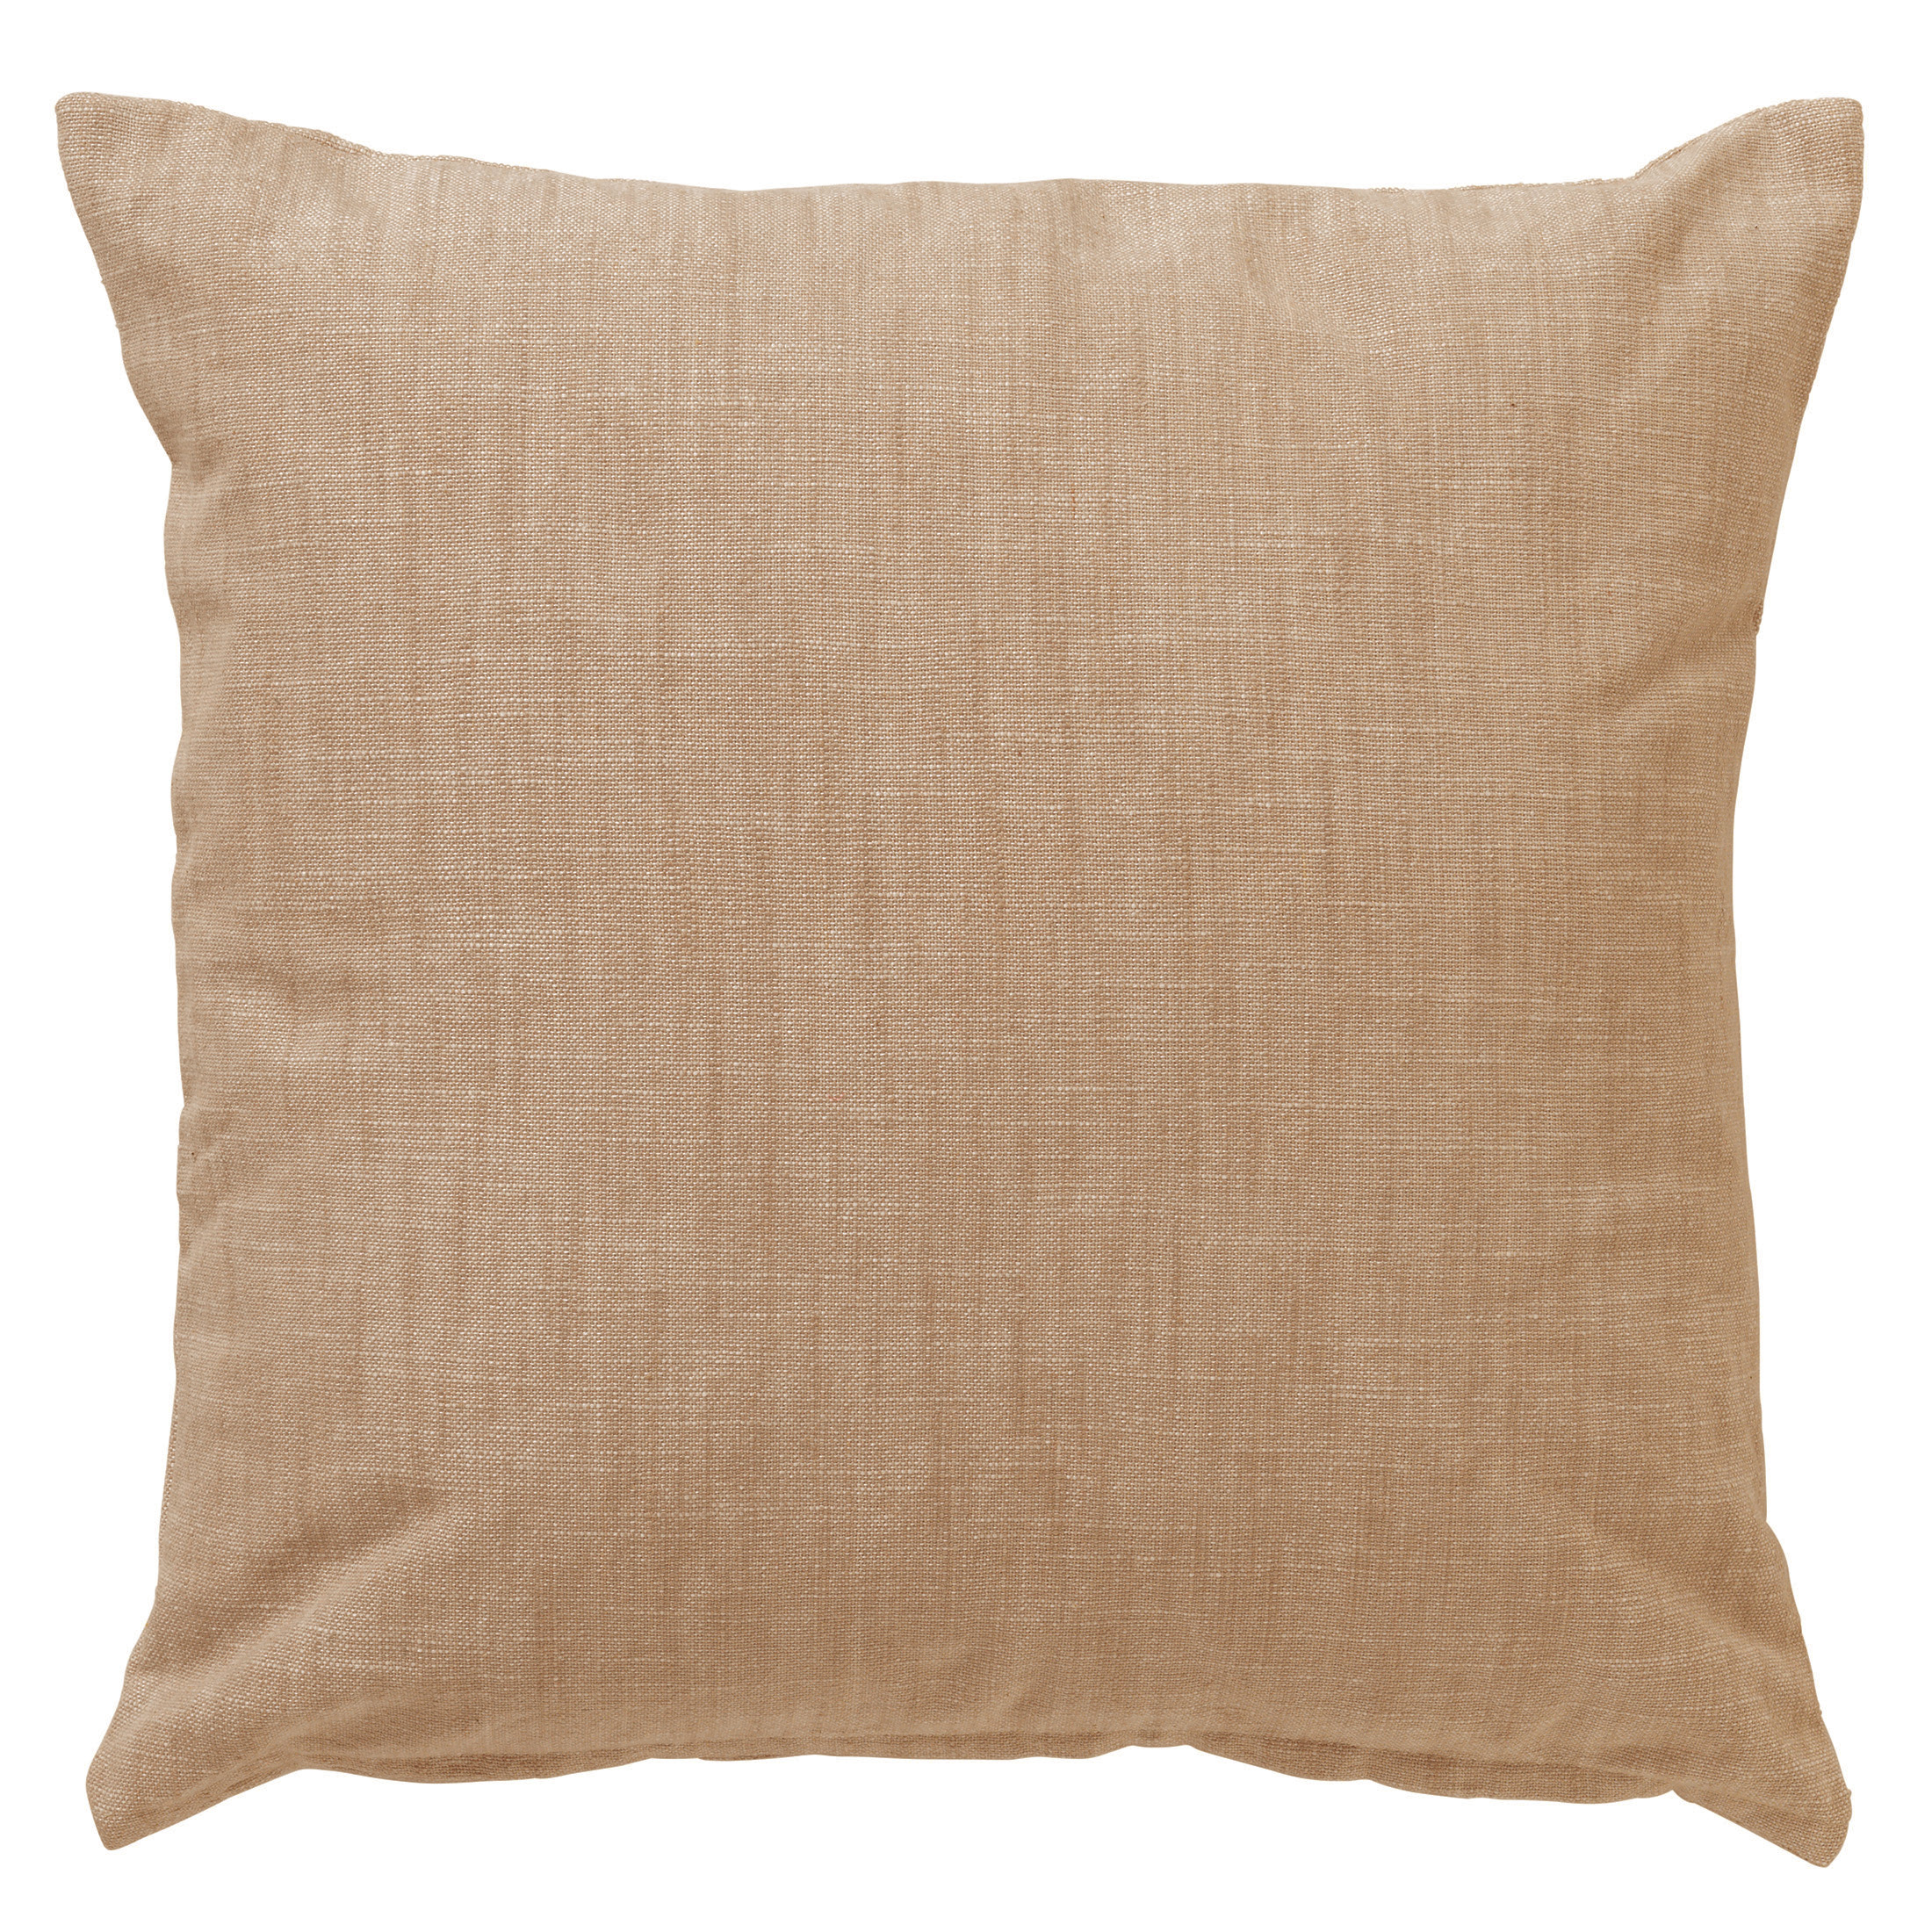 NATURA - Cushion 100% cotton 45x45 cm Tobacco Brown